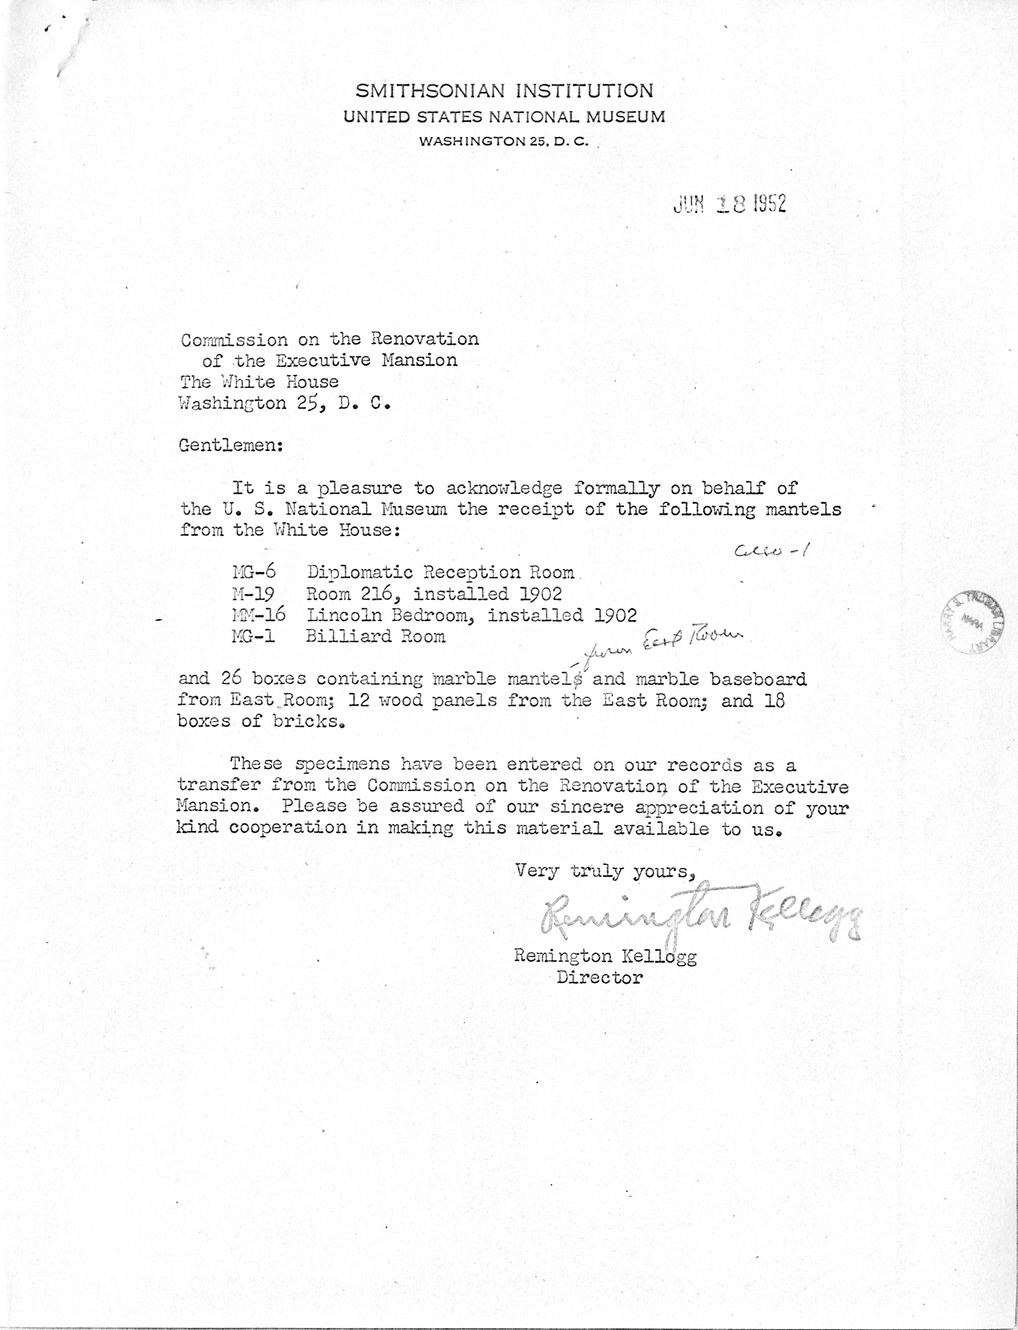 Correspondence Between Major General Glen E. Edgerton and Mr. Remington Kellogg